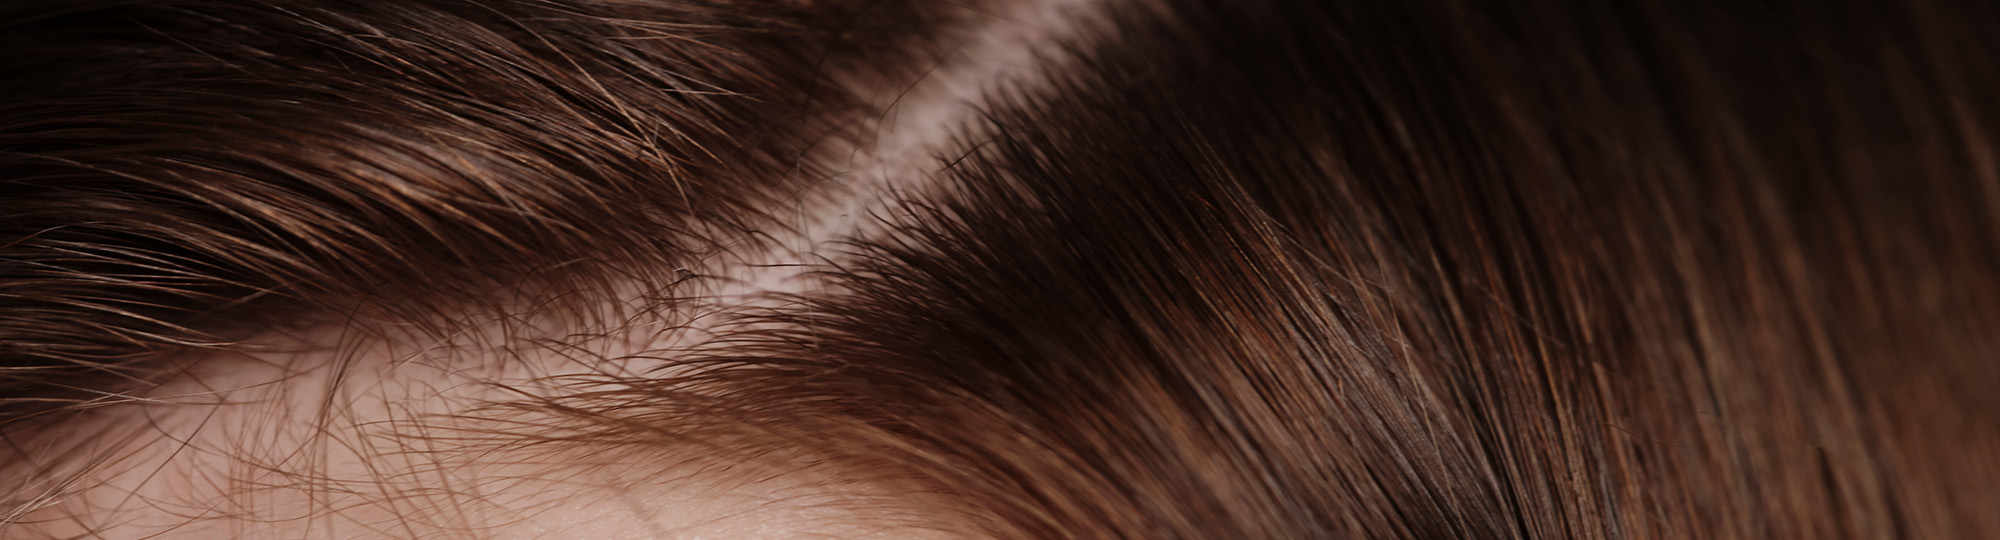 Microbiota scalpului: rol și beneficii pentru sănătatea capilară